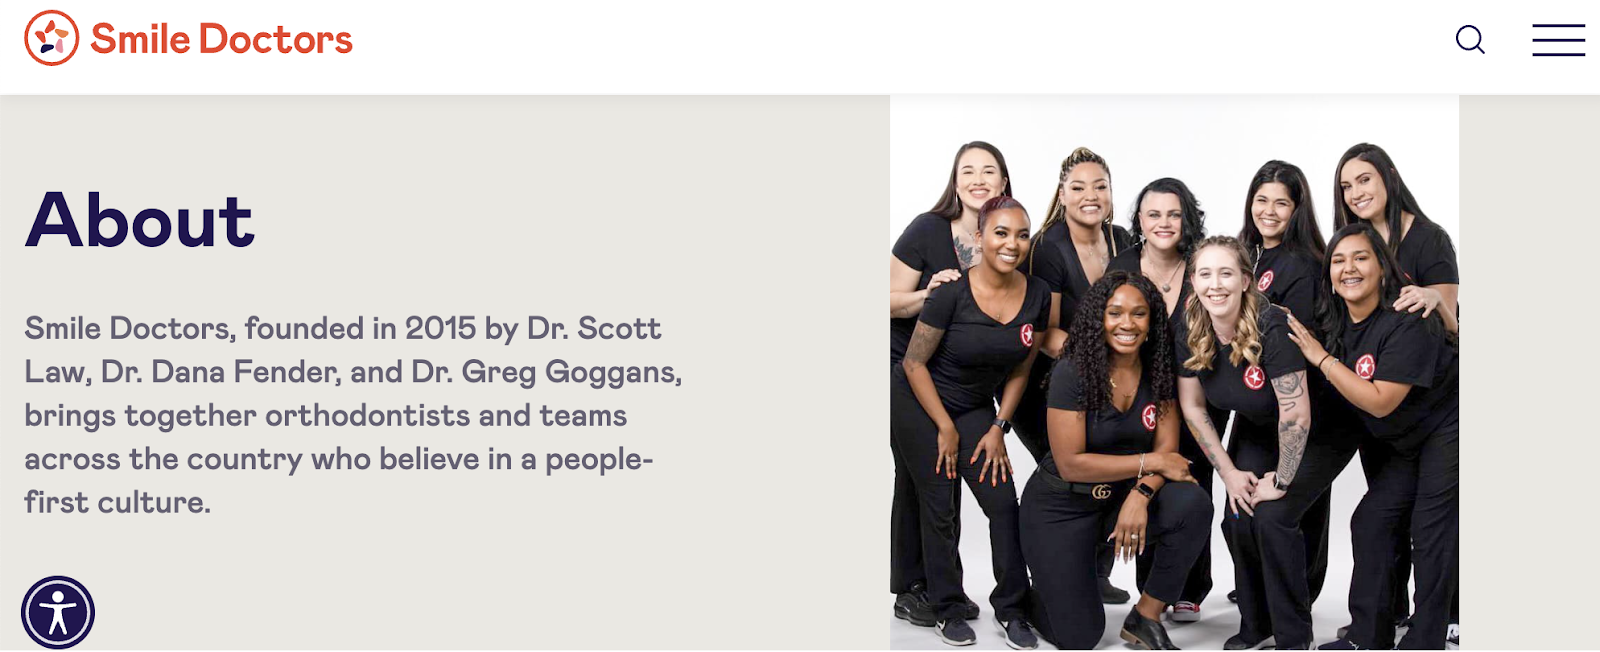 الحملات التسويقية لطب الأسنان، الصفحة الرئيسية لـ Smile Doctors